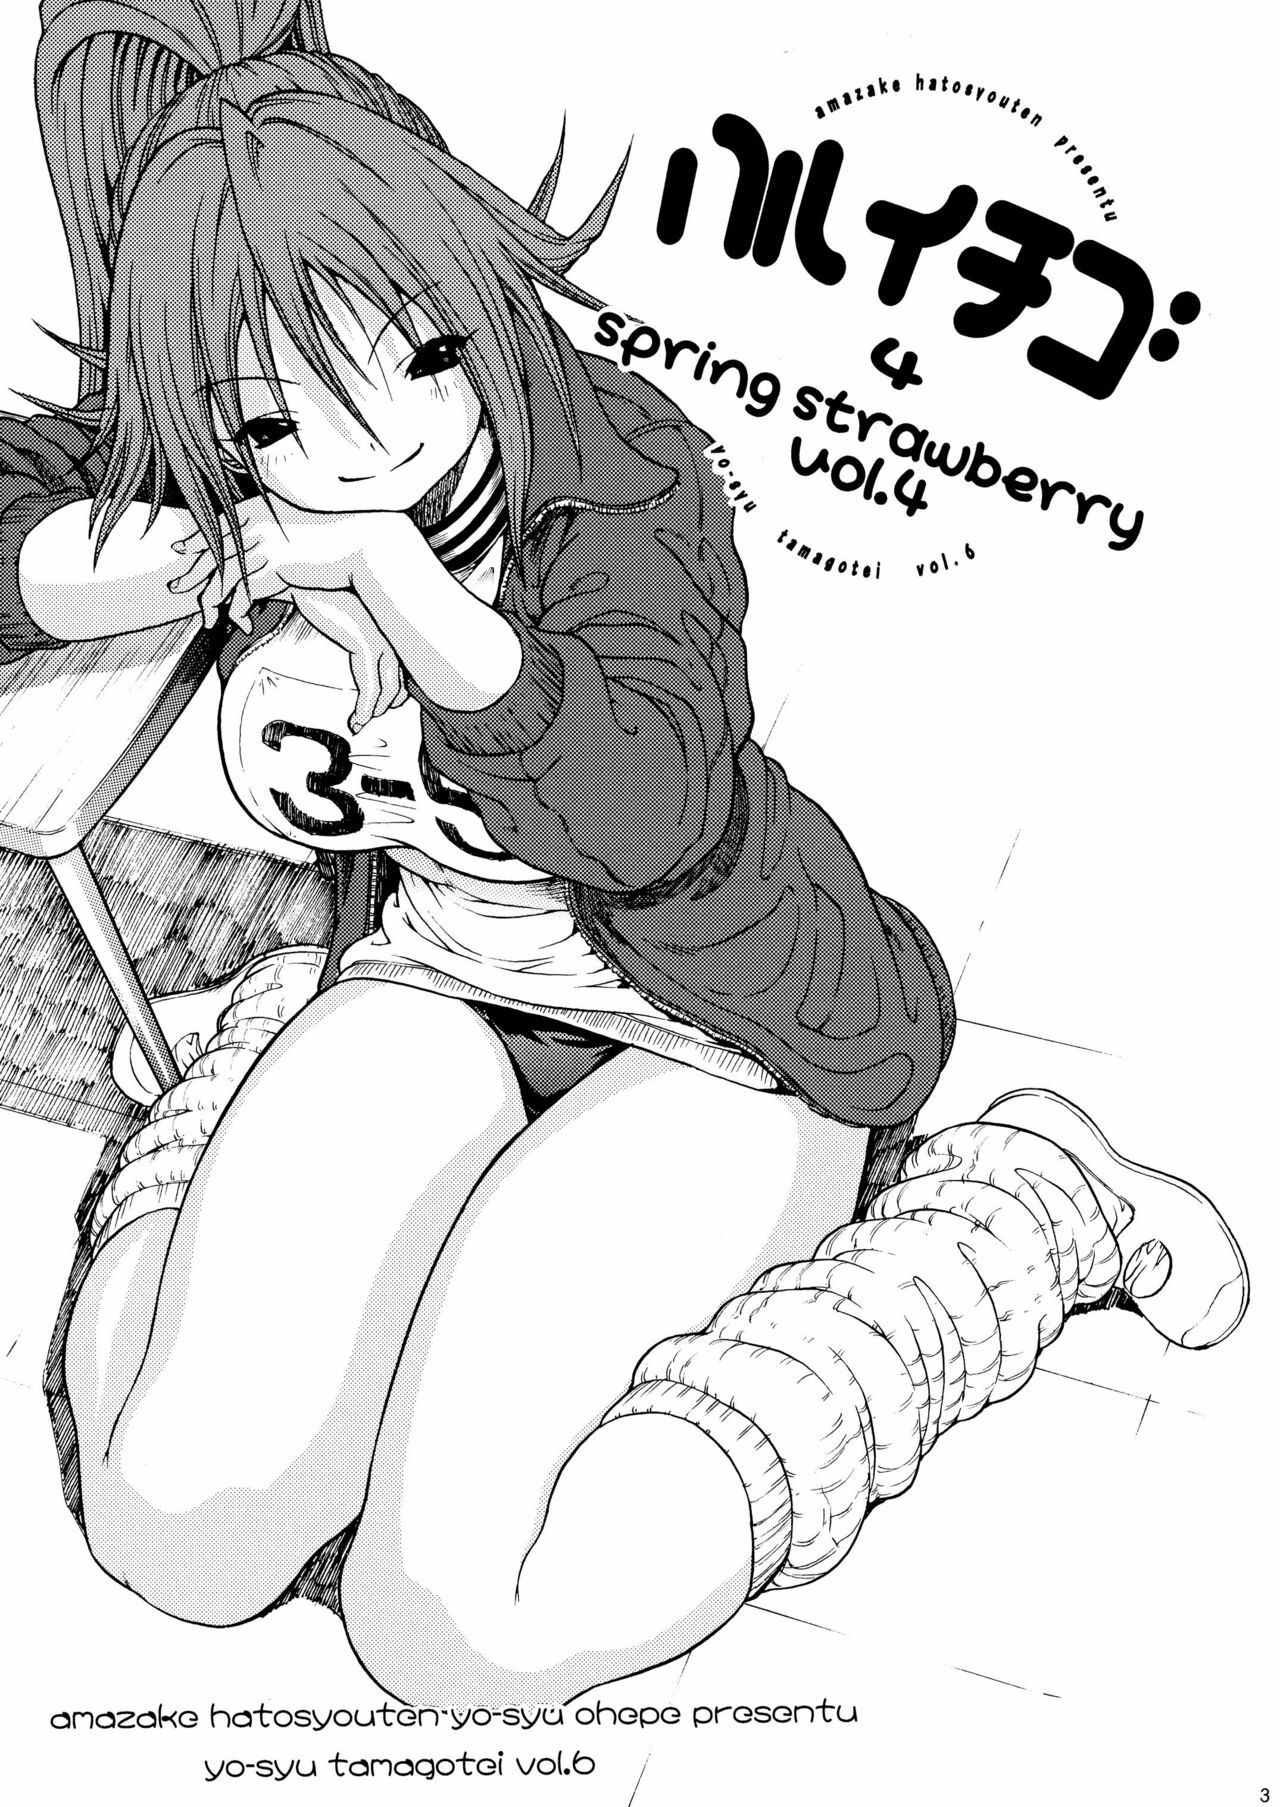 [Amazake Hatosyo-ten (Yoshu Ohepe)] Haru Ichigo Vol. 4 - Spring Strawberry Vol. 4 (Ichigo 100%) [Digital] page 2 full